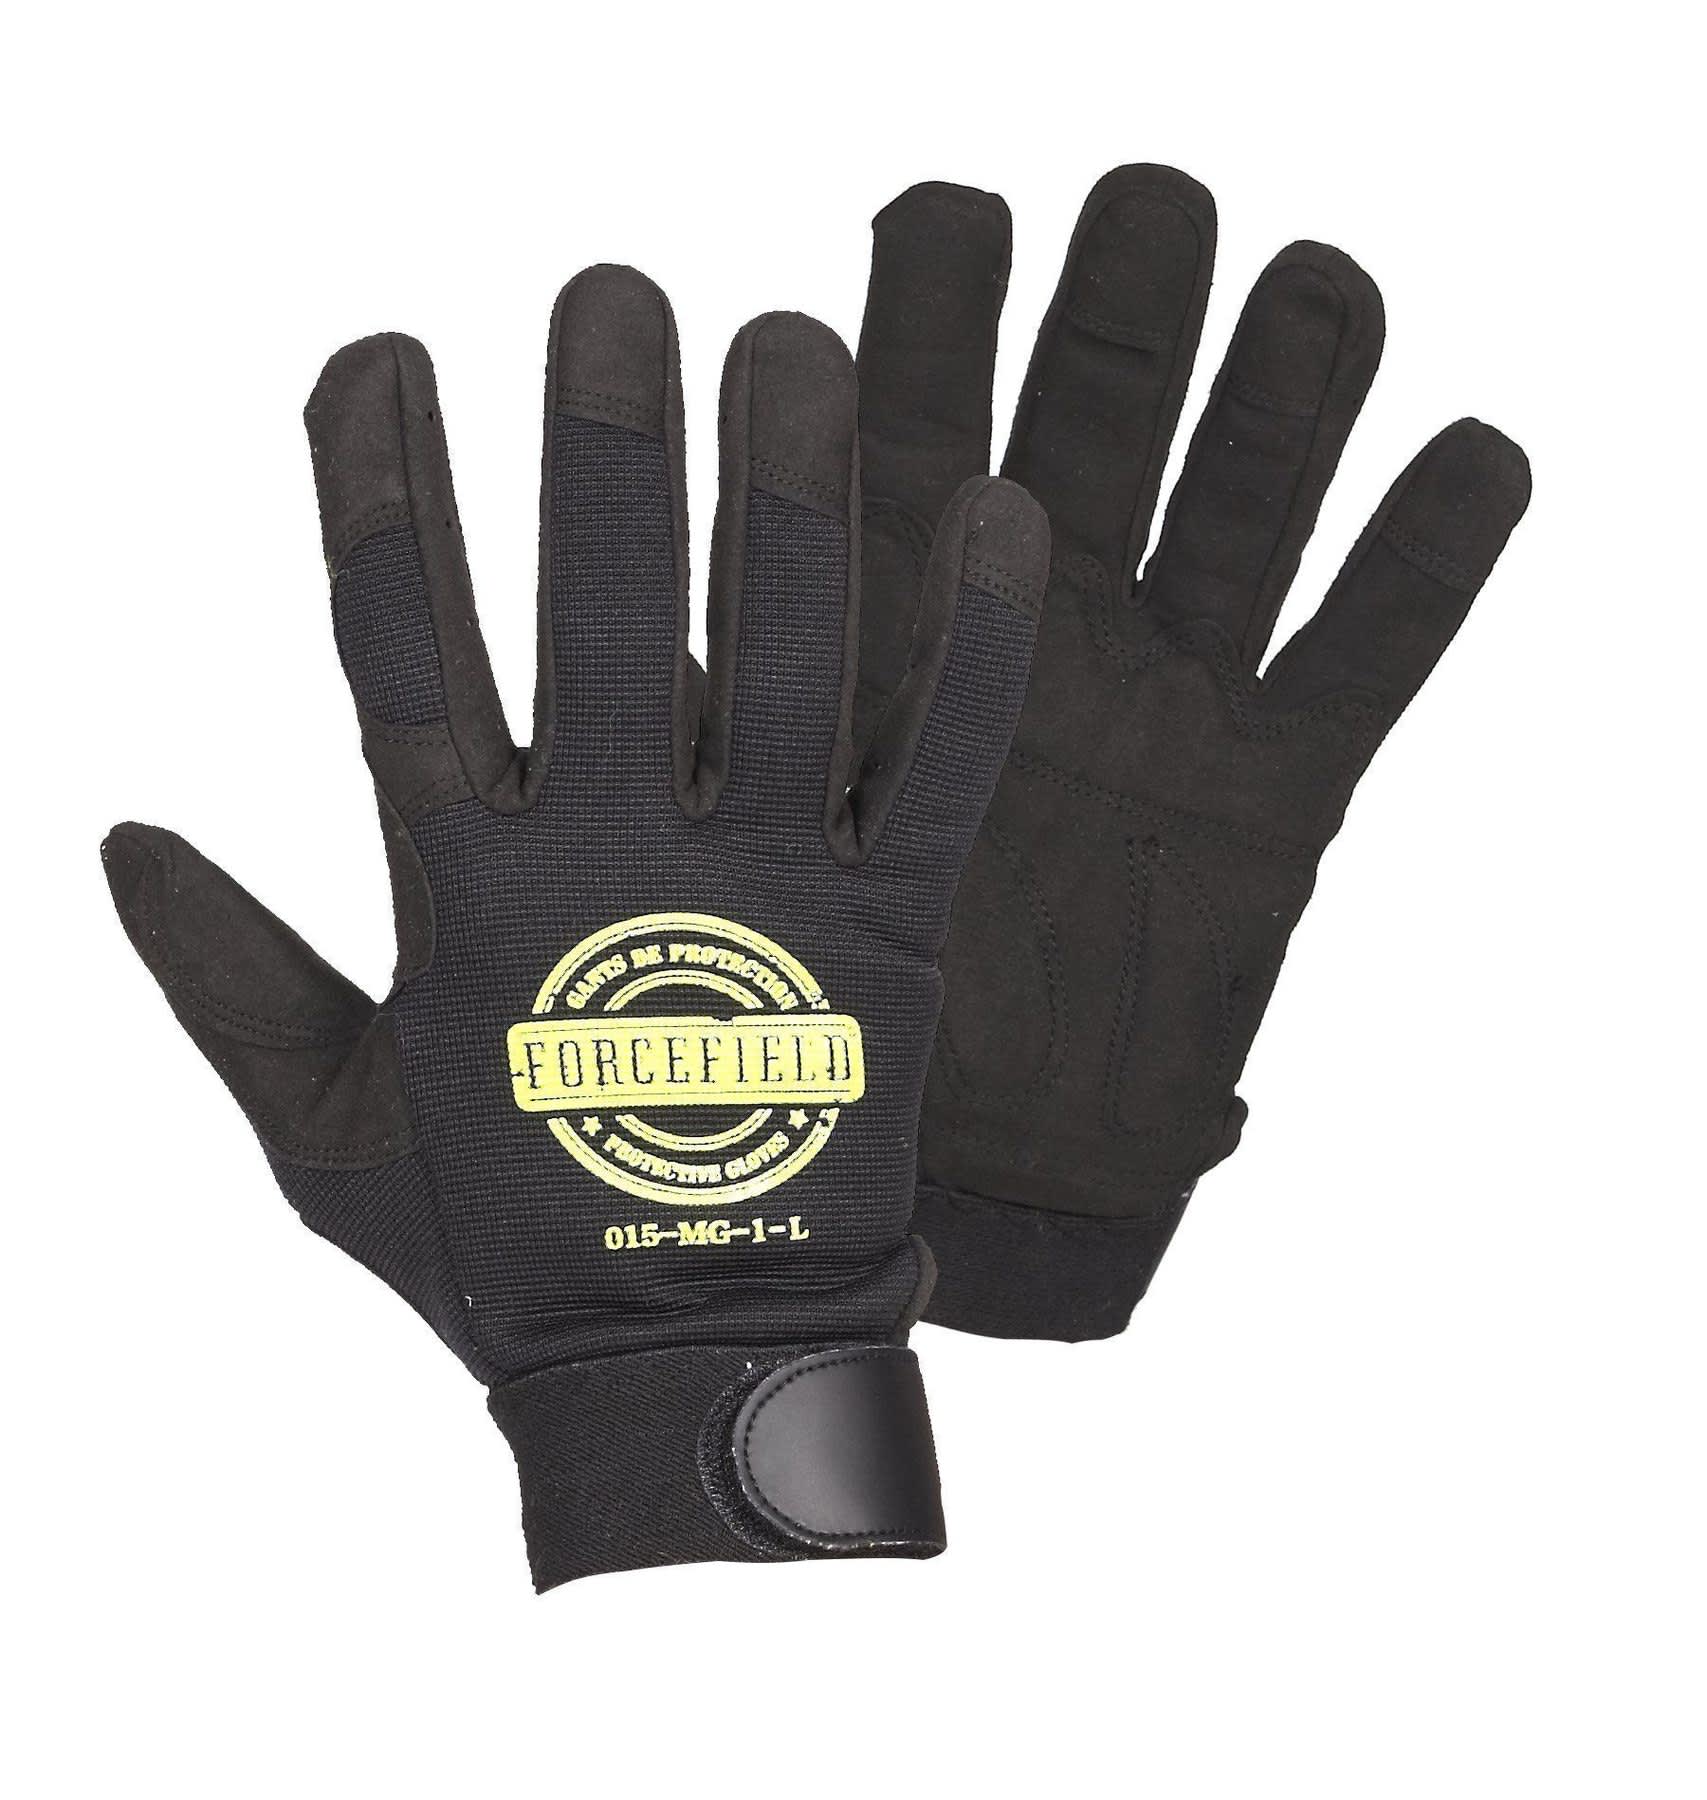 Mechanics glove w/padding 015-MG-1 – XXL